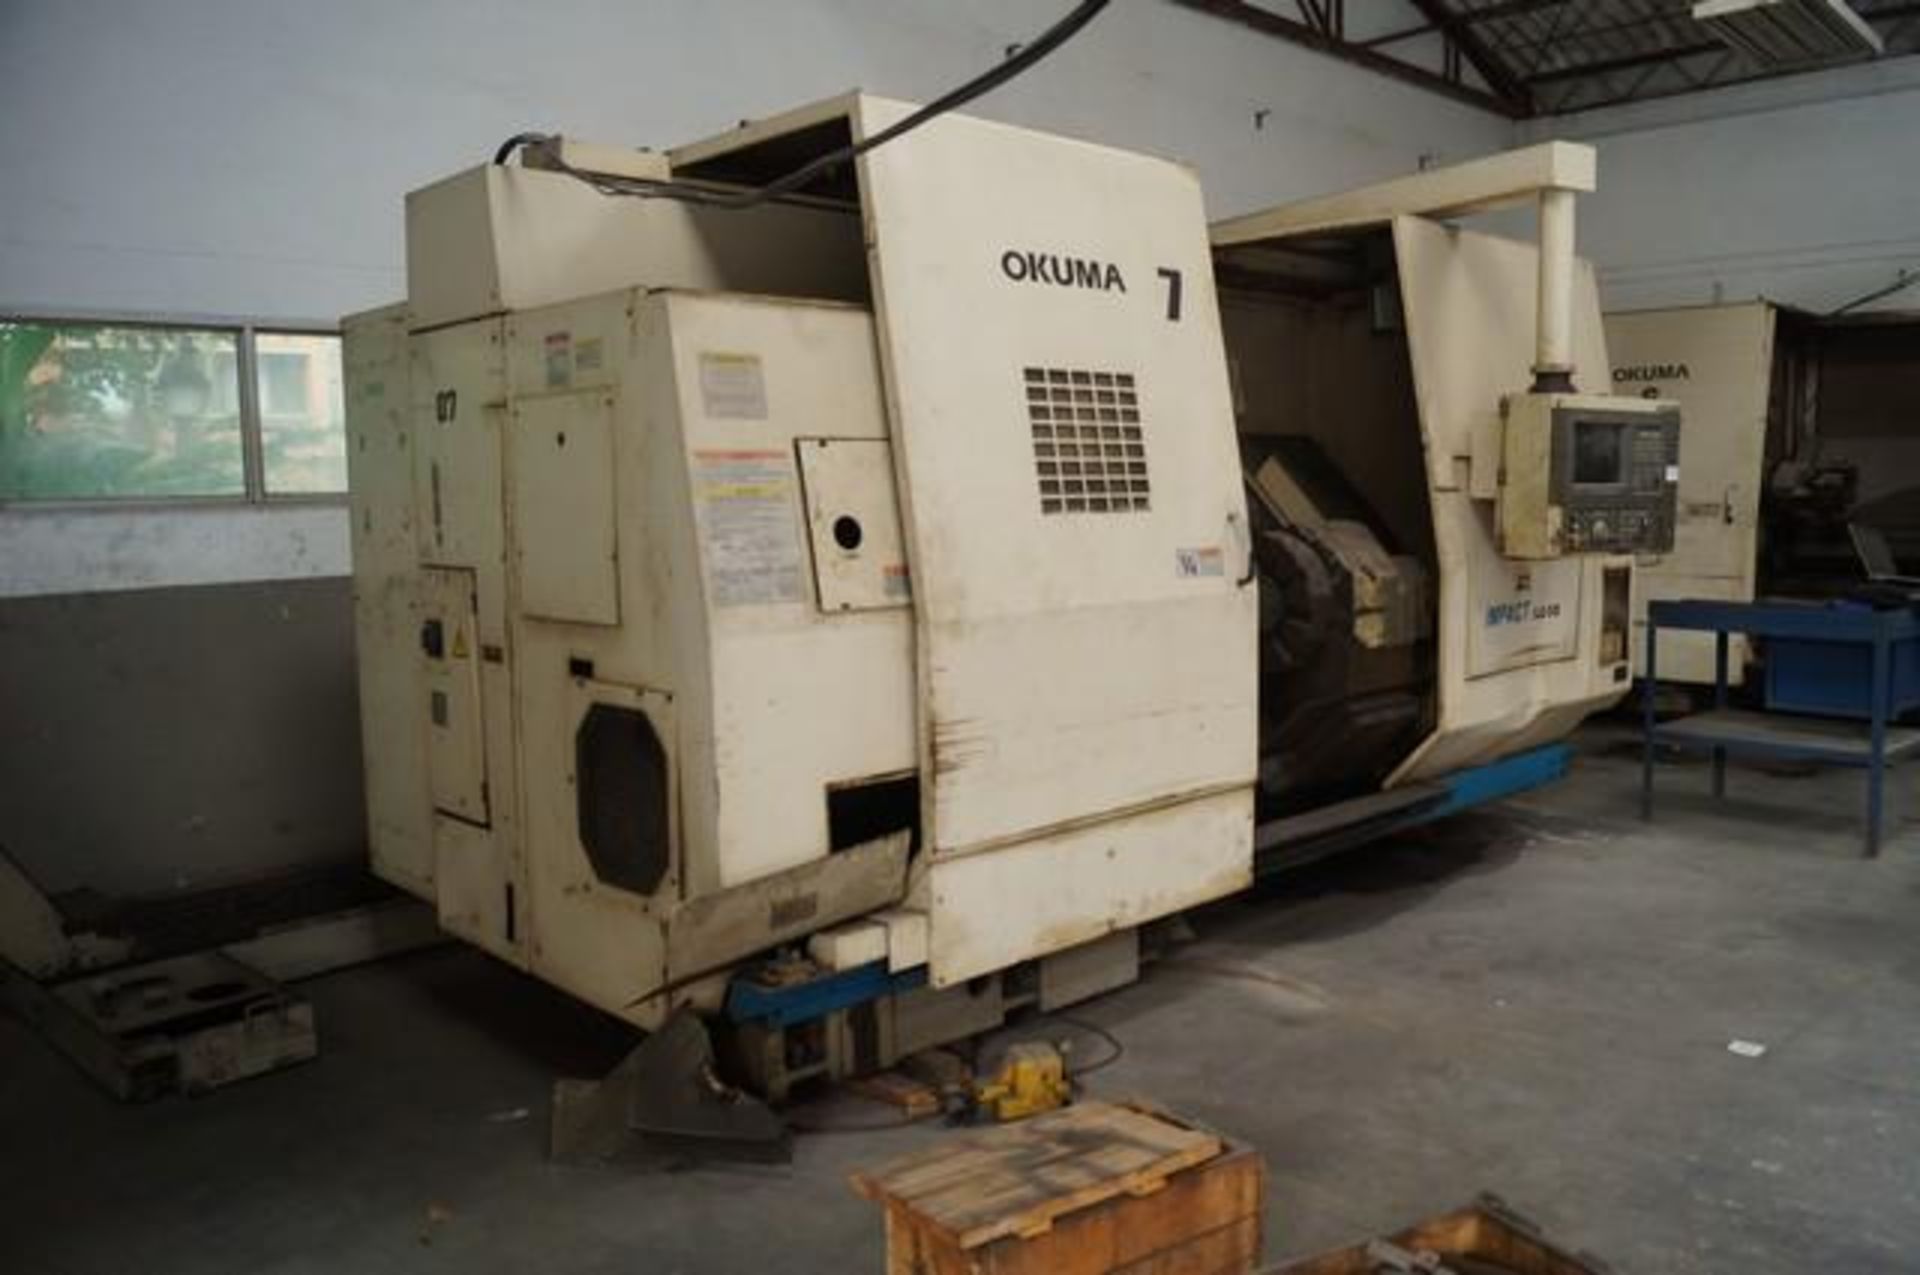 2000 OKUMA LU35 Twin Turret CNC Horizontal Turning Center - Image 2 of 13